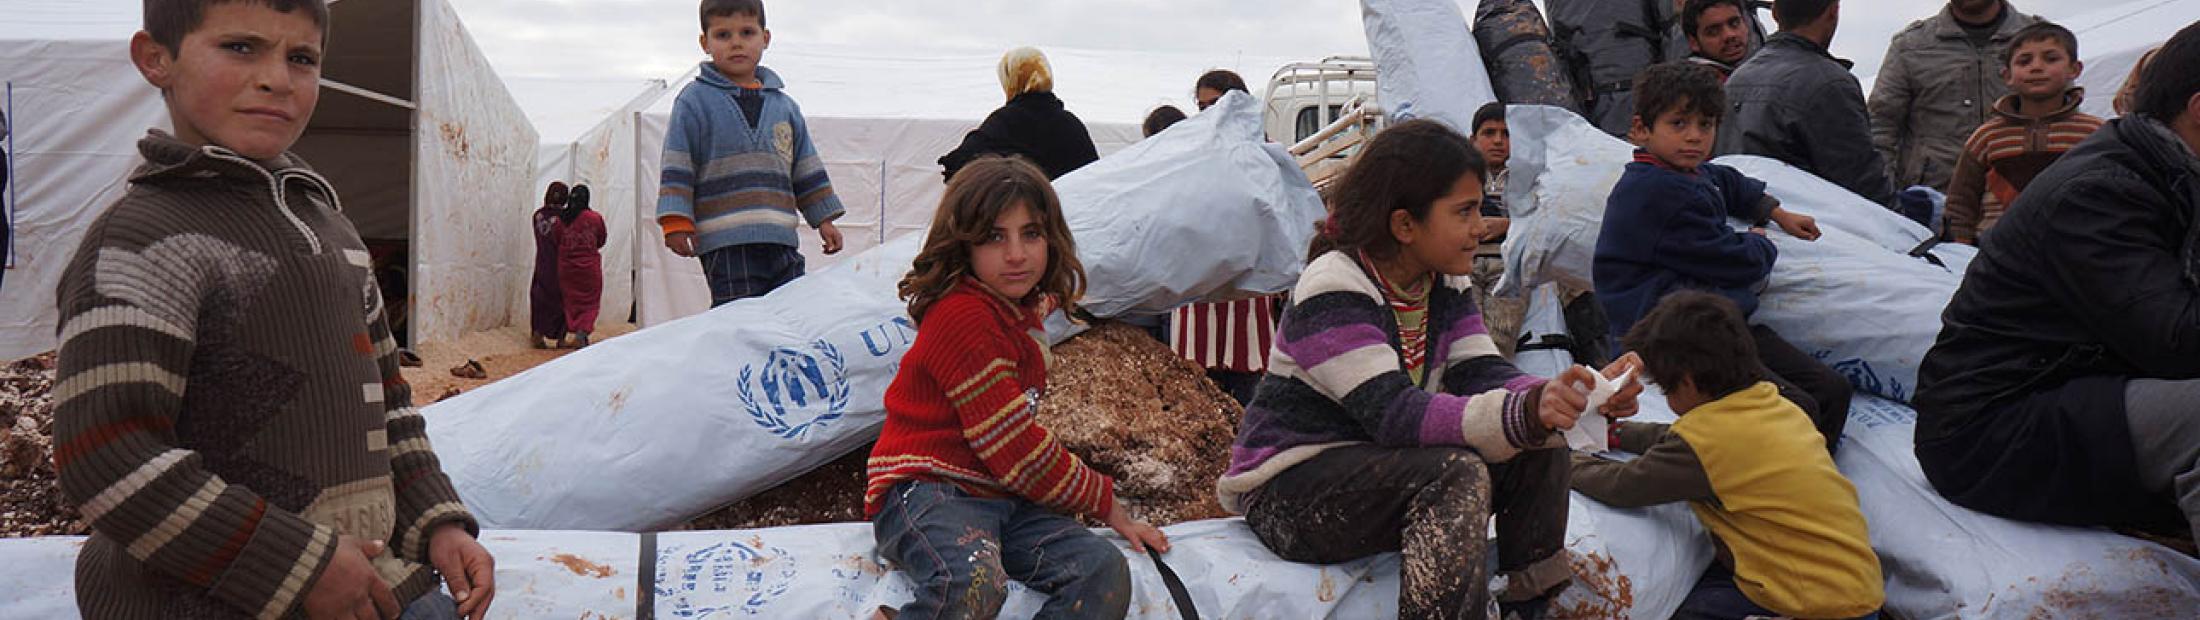 La Obra Social de la Caixa lanza una campaña de microdonativos a favor de los refugiados sirios